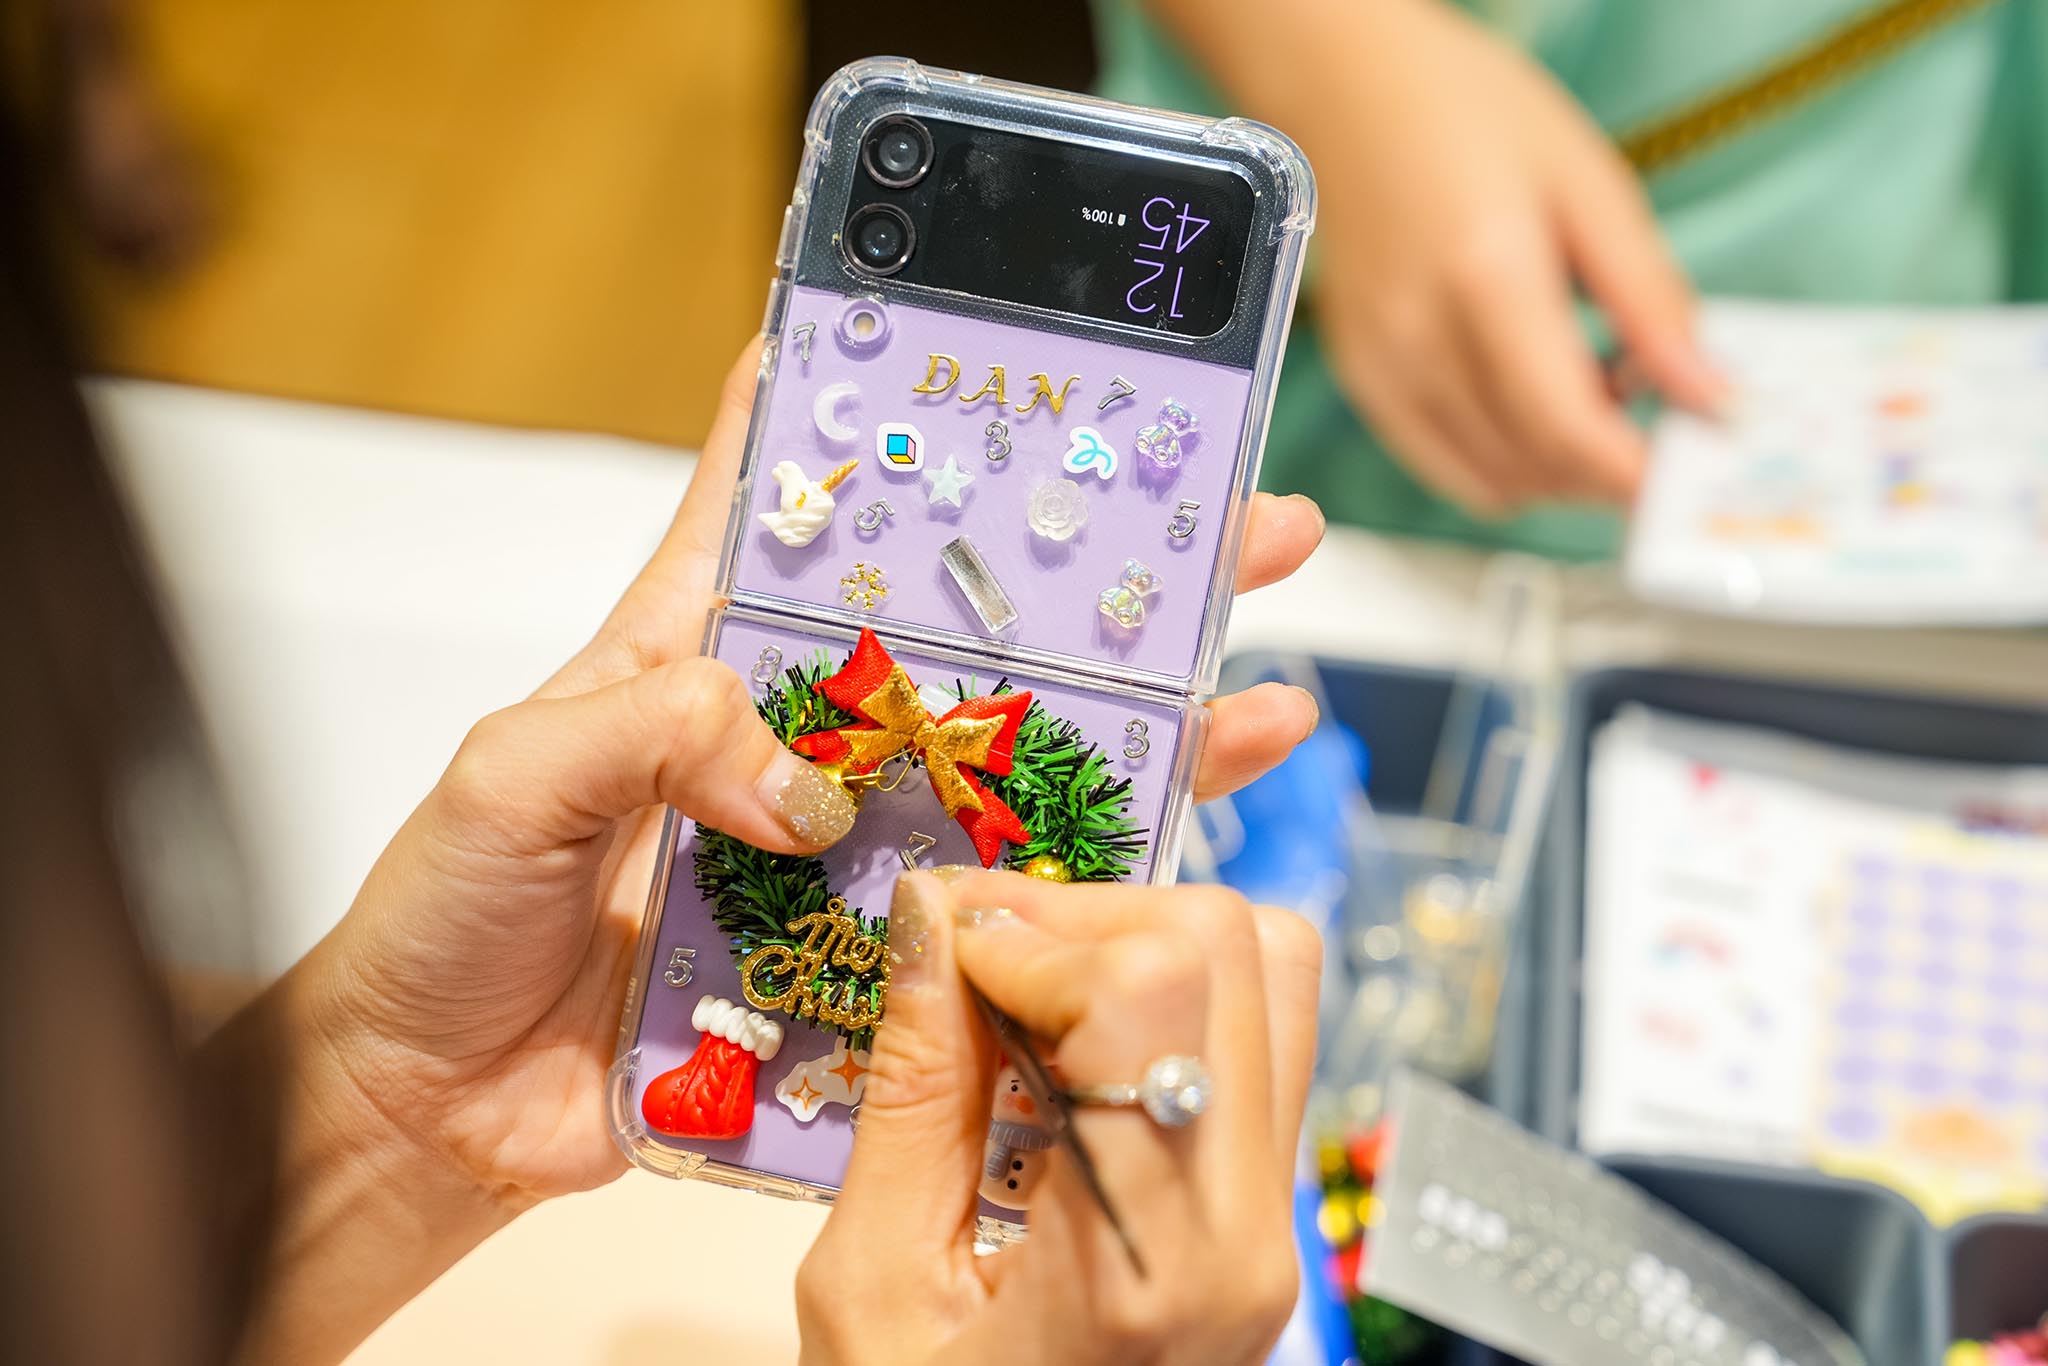 Samsung chinh phục giới trẻ Hà Nội với không gian phụ kiện “Cá nhân hóa cùng Galaxy” tại chuỗi cửa hàng trải nghiệm Samsung